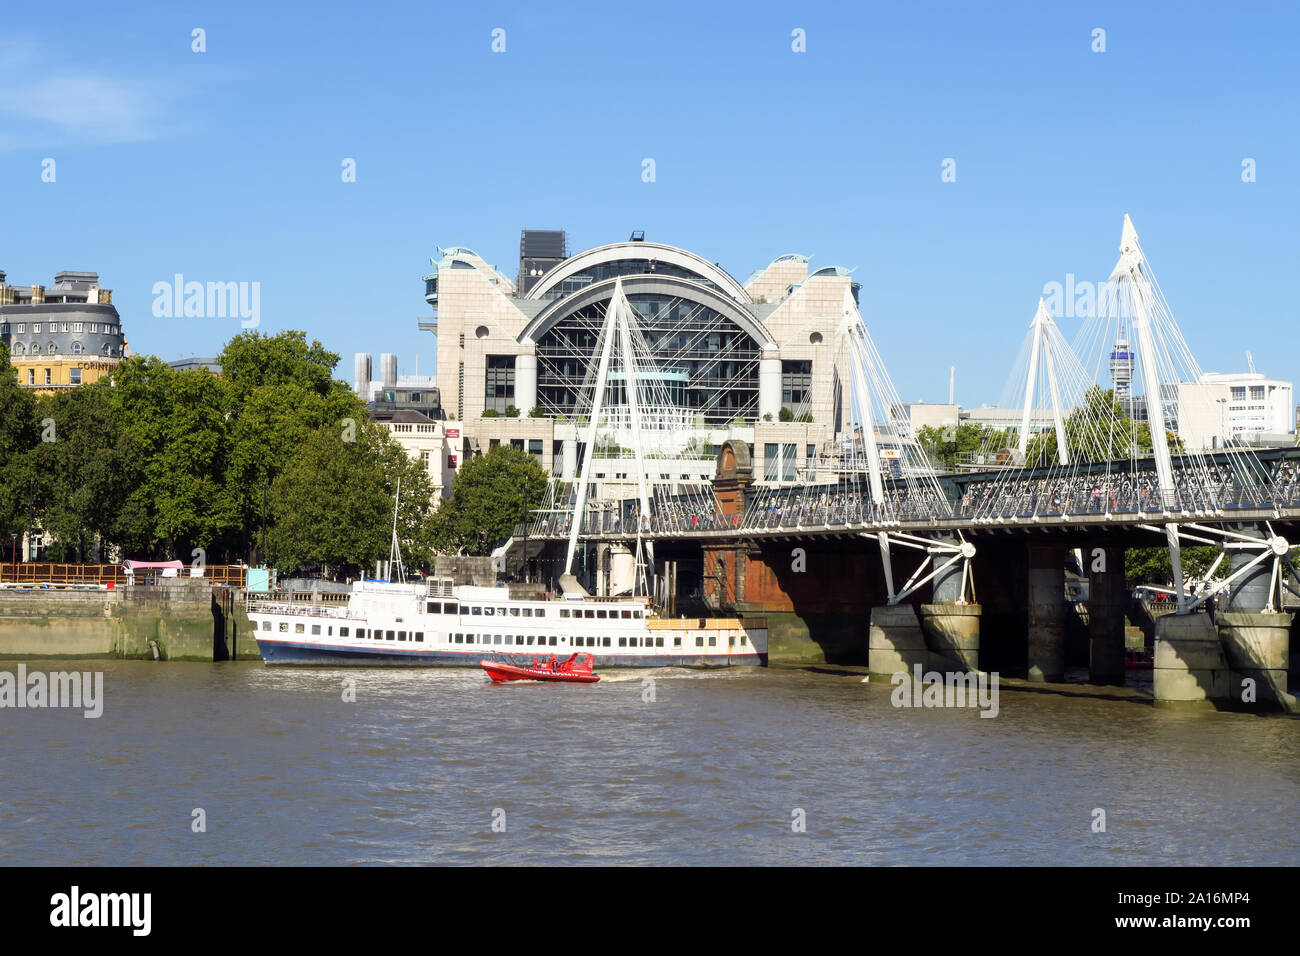 RS Hispaniola, ein Restaurant Schiff am Nordufer der Themse in London mit Charing Cross Station im Hintergrund Stockfoto